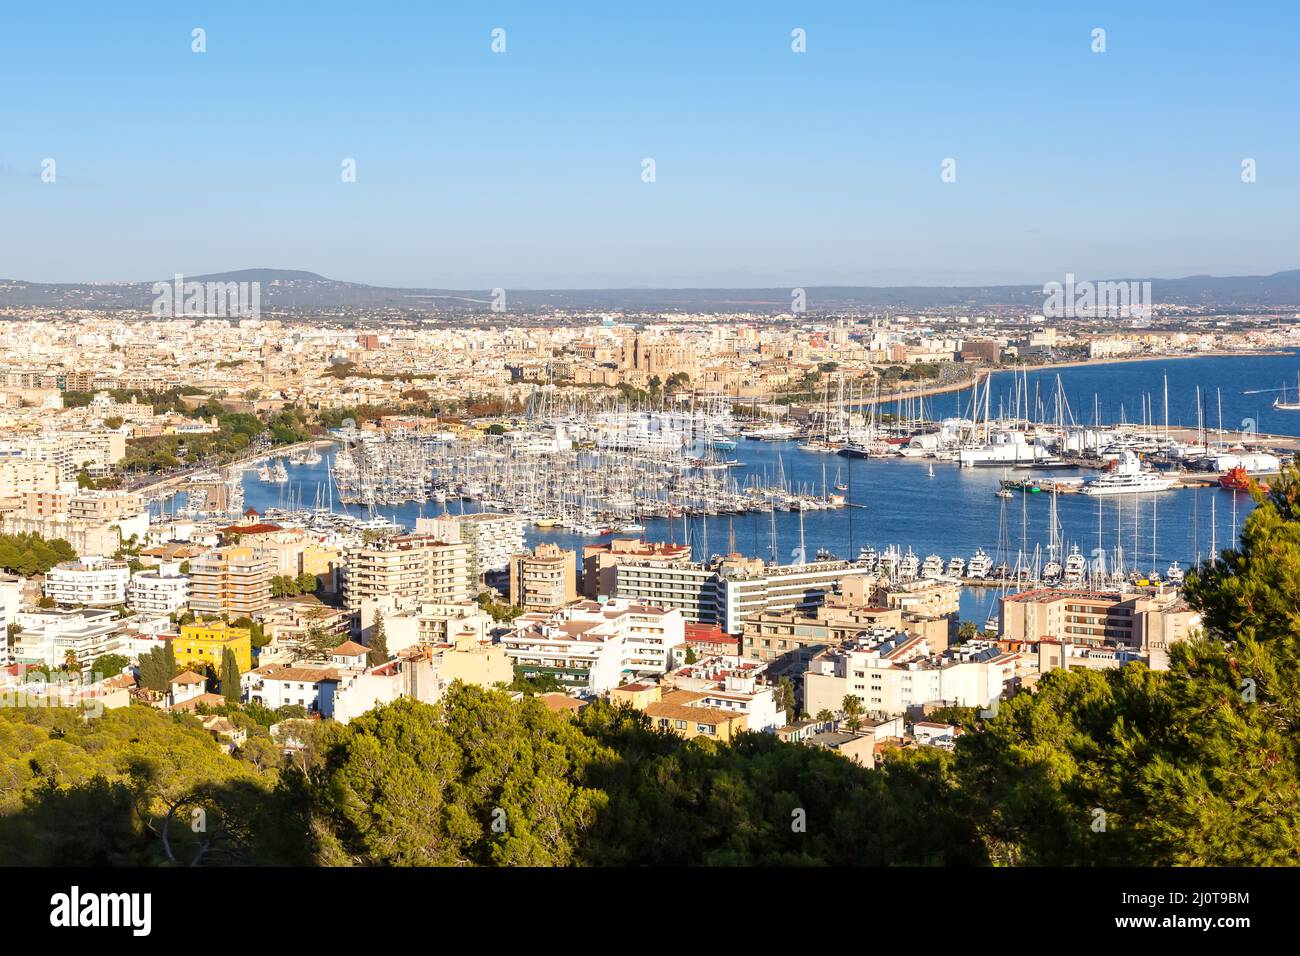 Port de plaisance de Palma de Majorque avec bateaux vacances Voyage ville en Espagne Banque D'Images